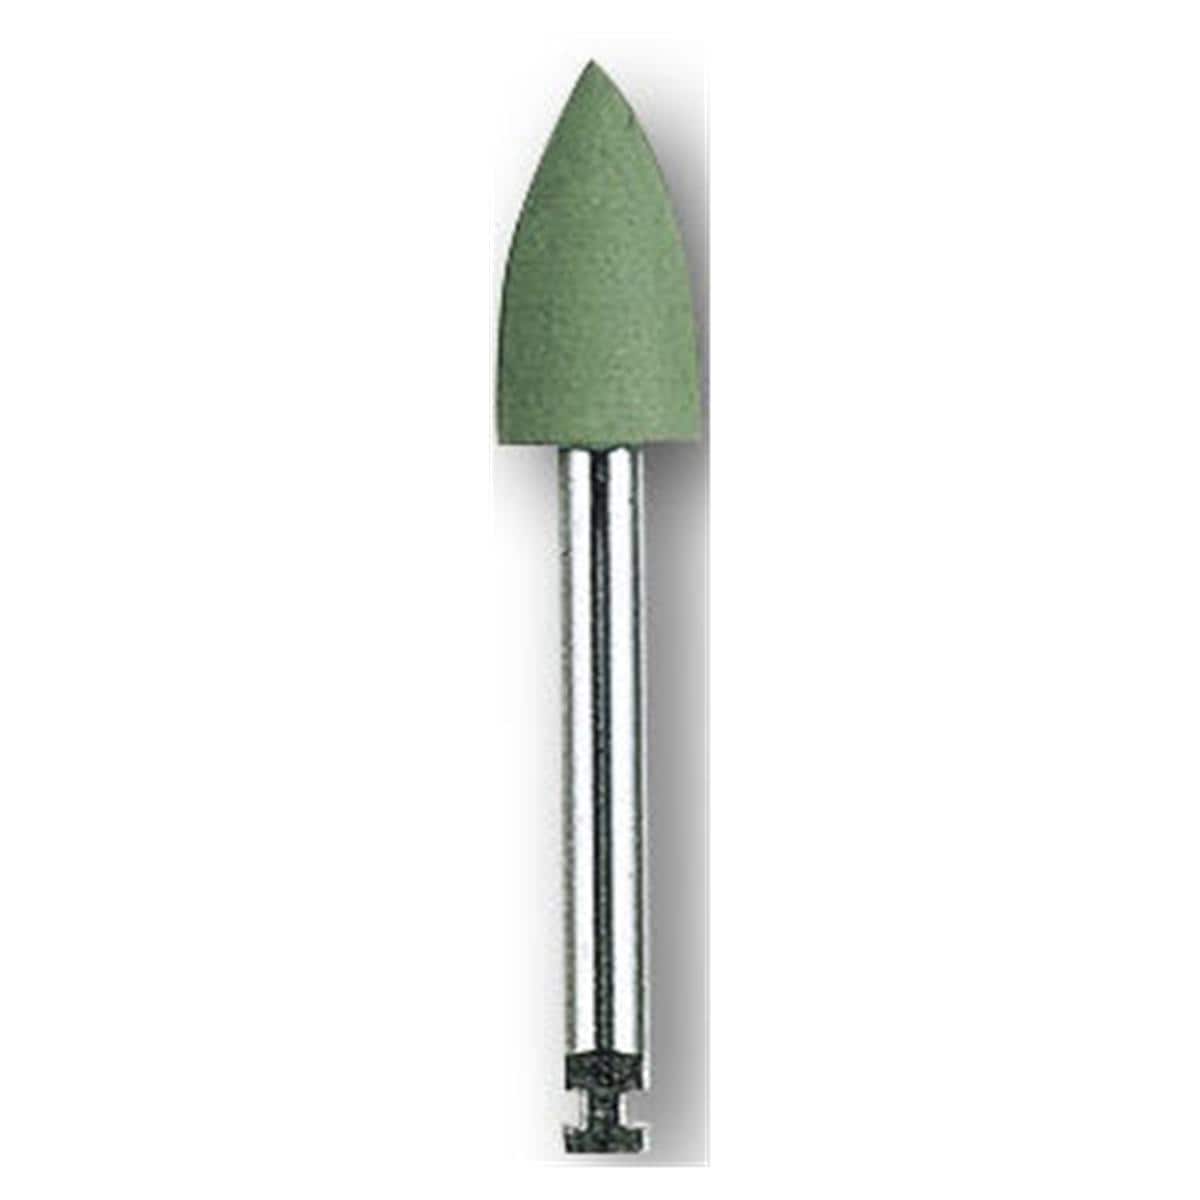 HS-Amalgam Polierer - Nachfüllpackung - Torpedo grün, 0653, Polierkopf: 5 x 10 mm, Packung 12 Stück